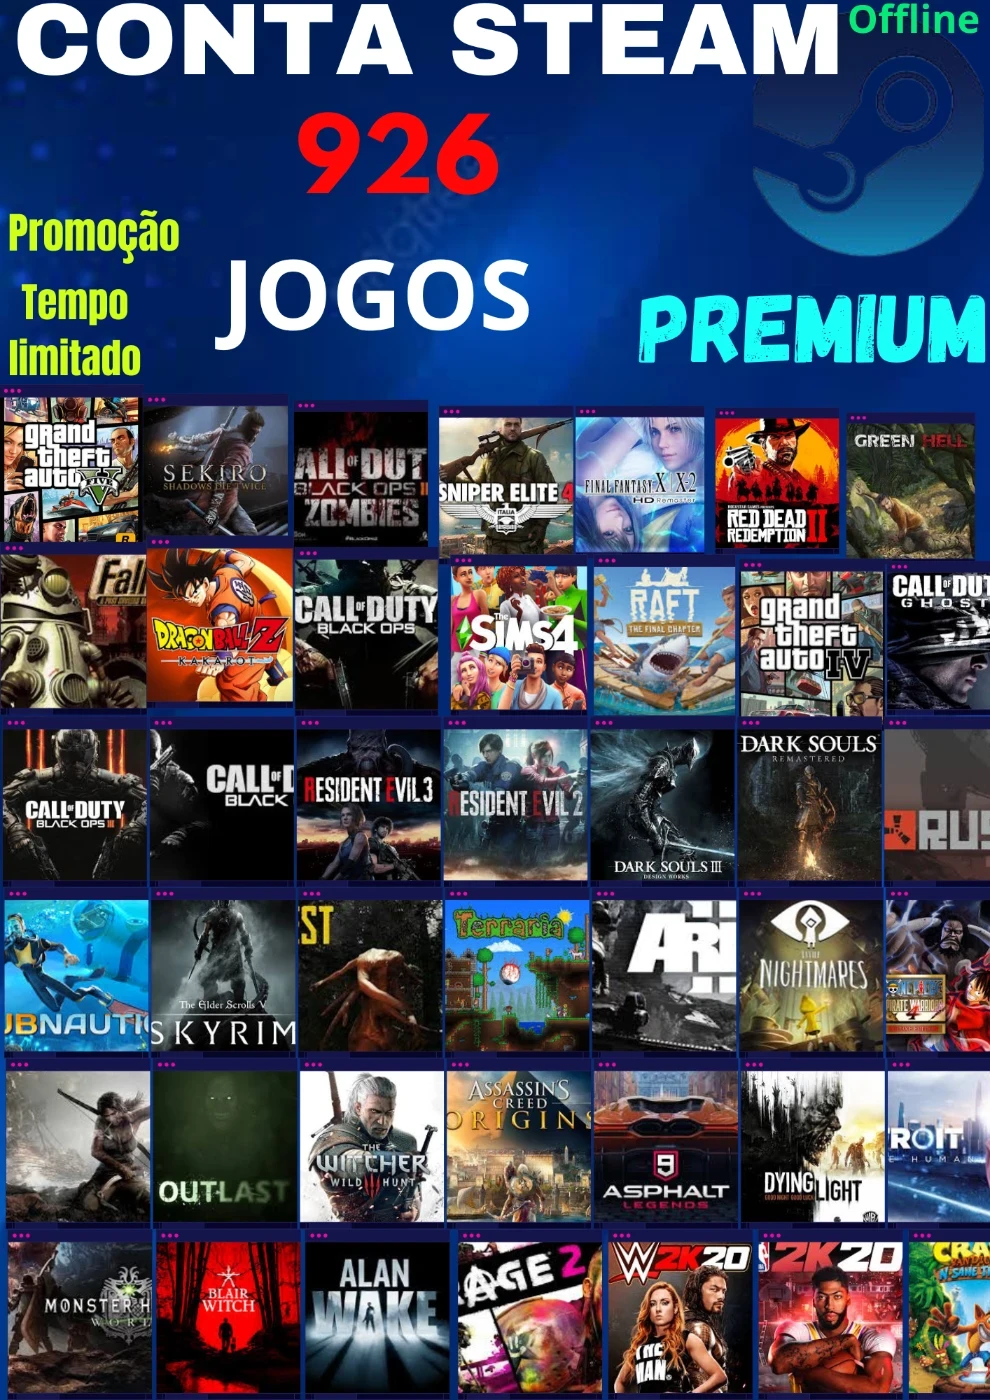 Epic Games libera dois jogos grátis e trará Just Cause 4 sem custos em breve